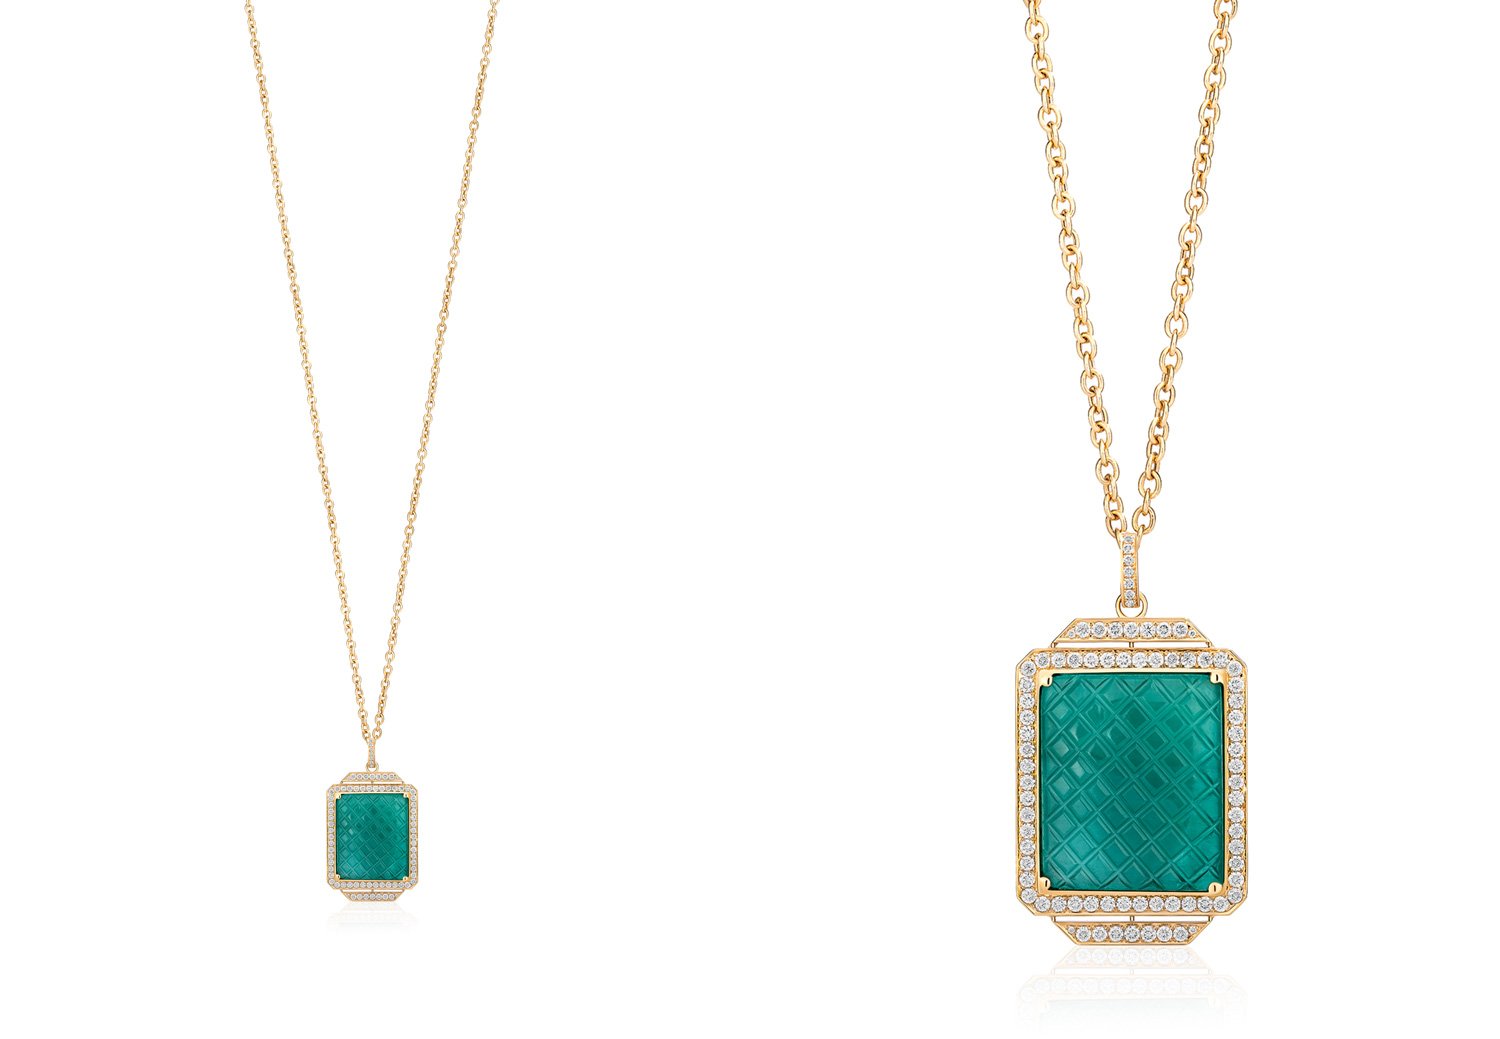 Goshwara "G-One" Emerald Pendant Necklace with Diamonds